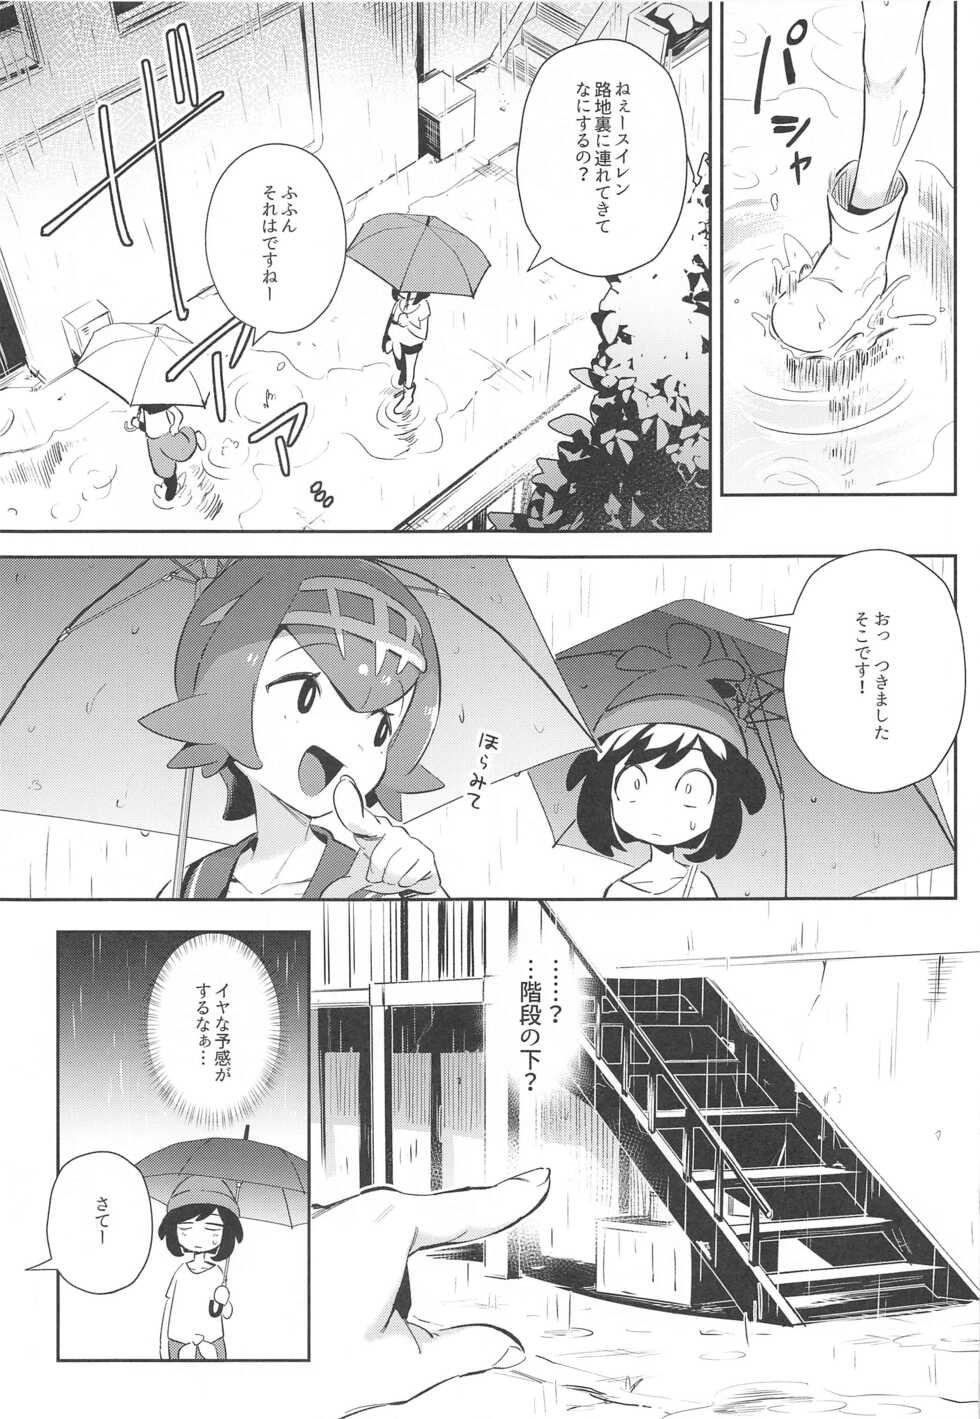 [Chouzankai (TER)] Onnanoko-tachi no Himitsu no Bouken 3 (Pokémon Sun & Moon) - Page 5